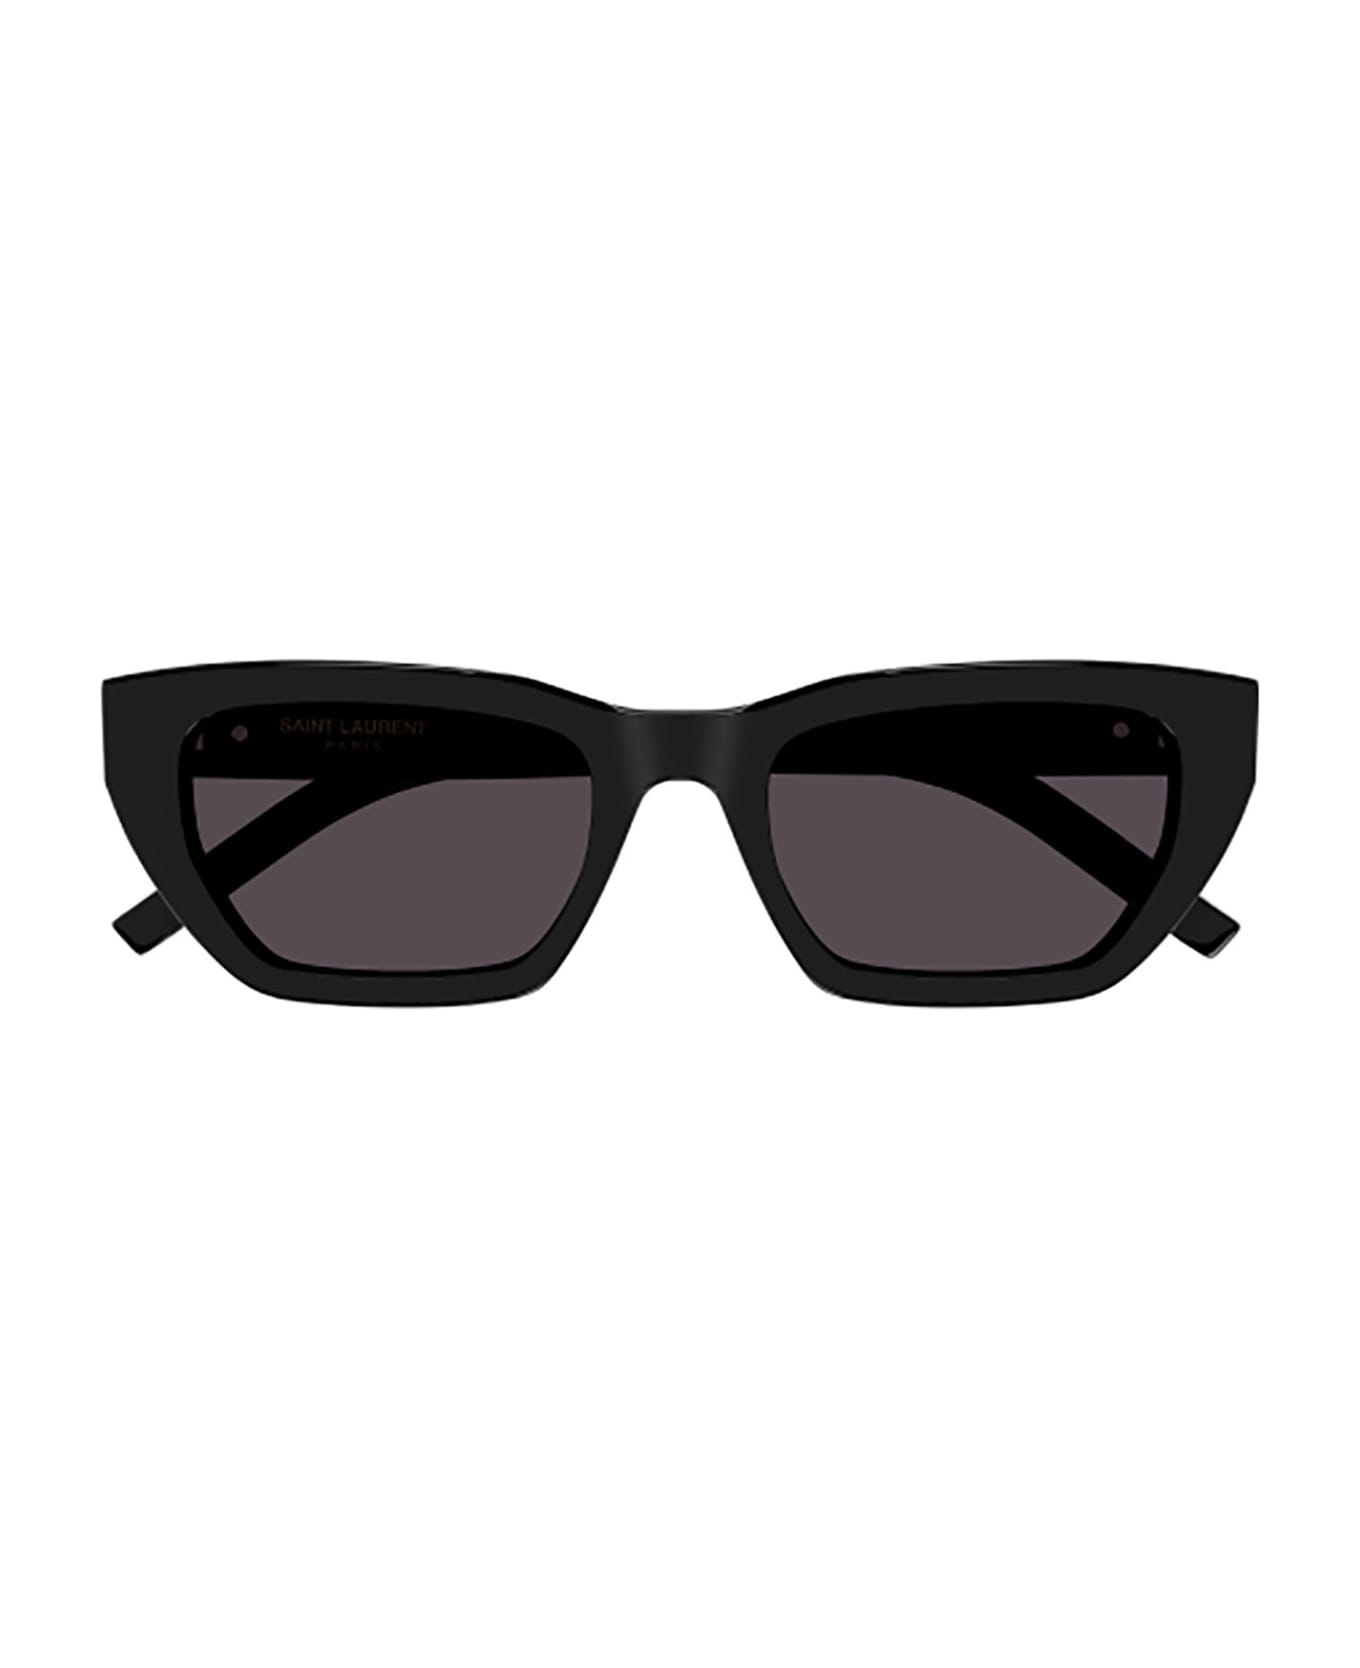 Saint Laurent Eyewear SL M127/F Sunglasses - Black Black Black サングラス